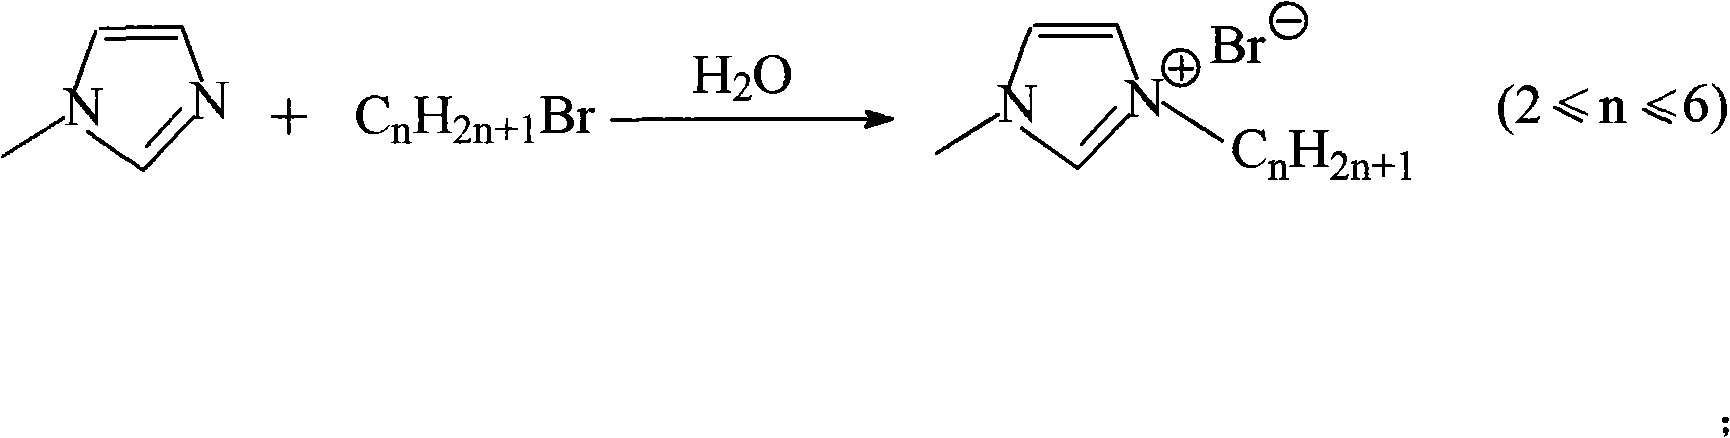 Method for preparing achromatic imidazole ionic liquids